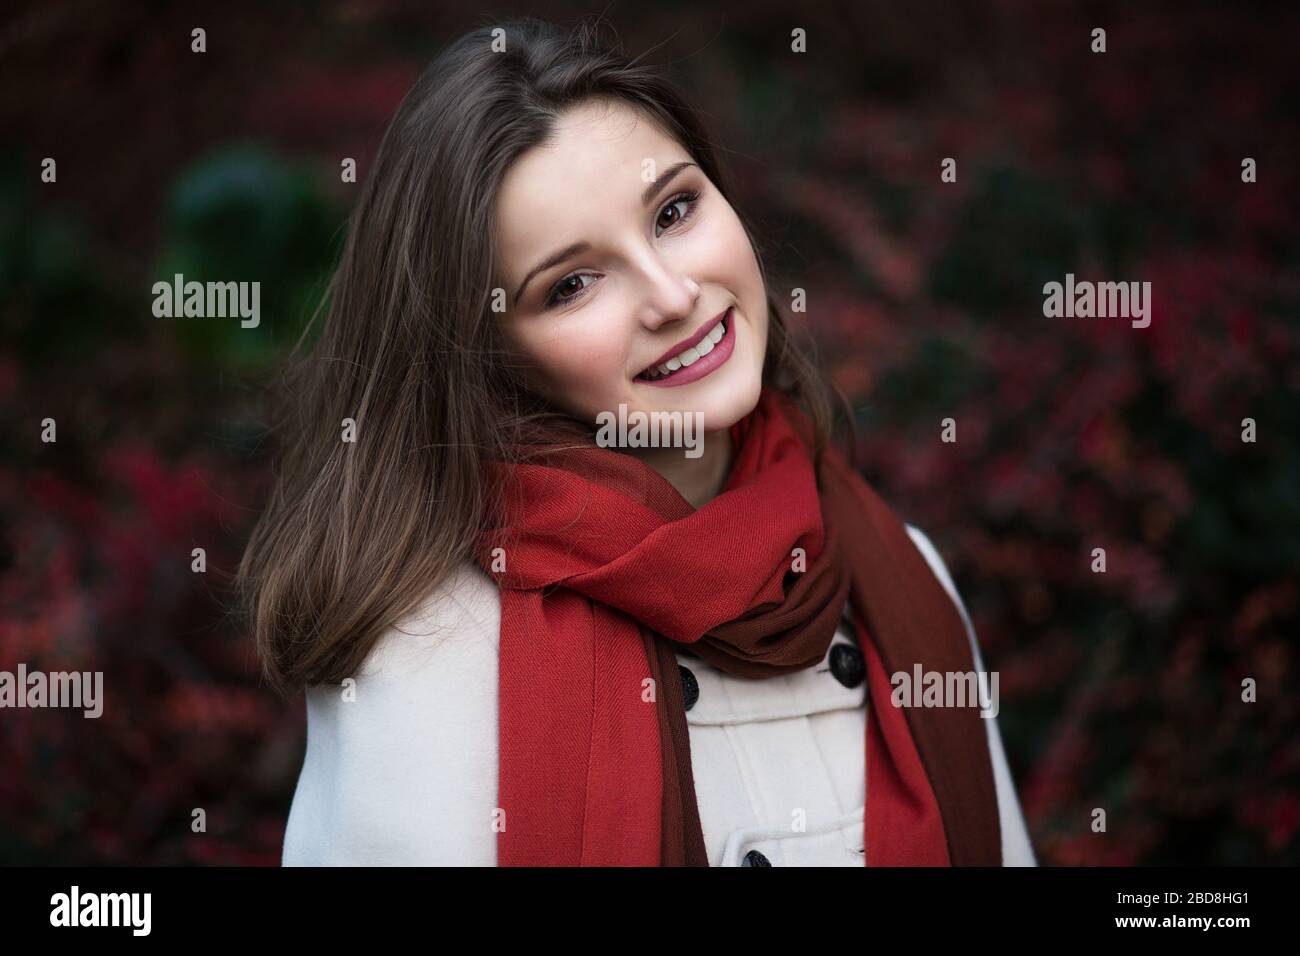 Woman smiling with sourire parfait et des dents blanches dans un parc et looking at camera Banque D'Images